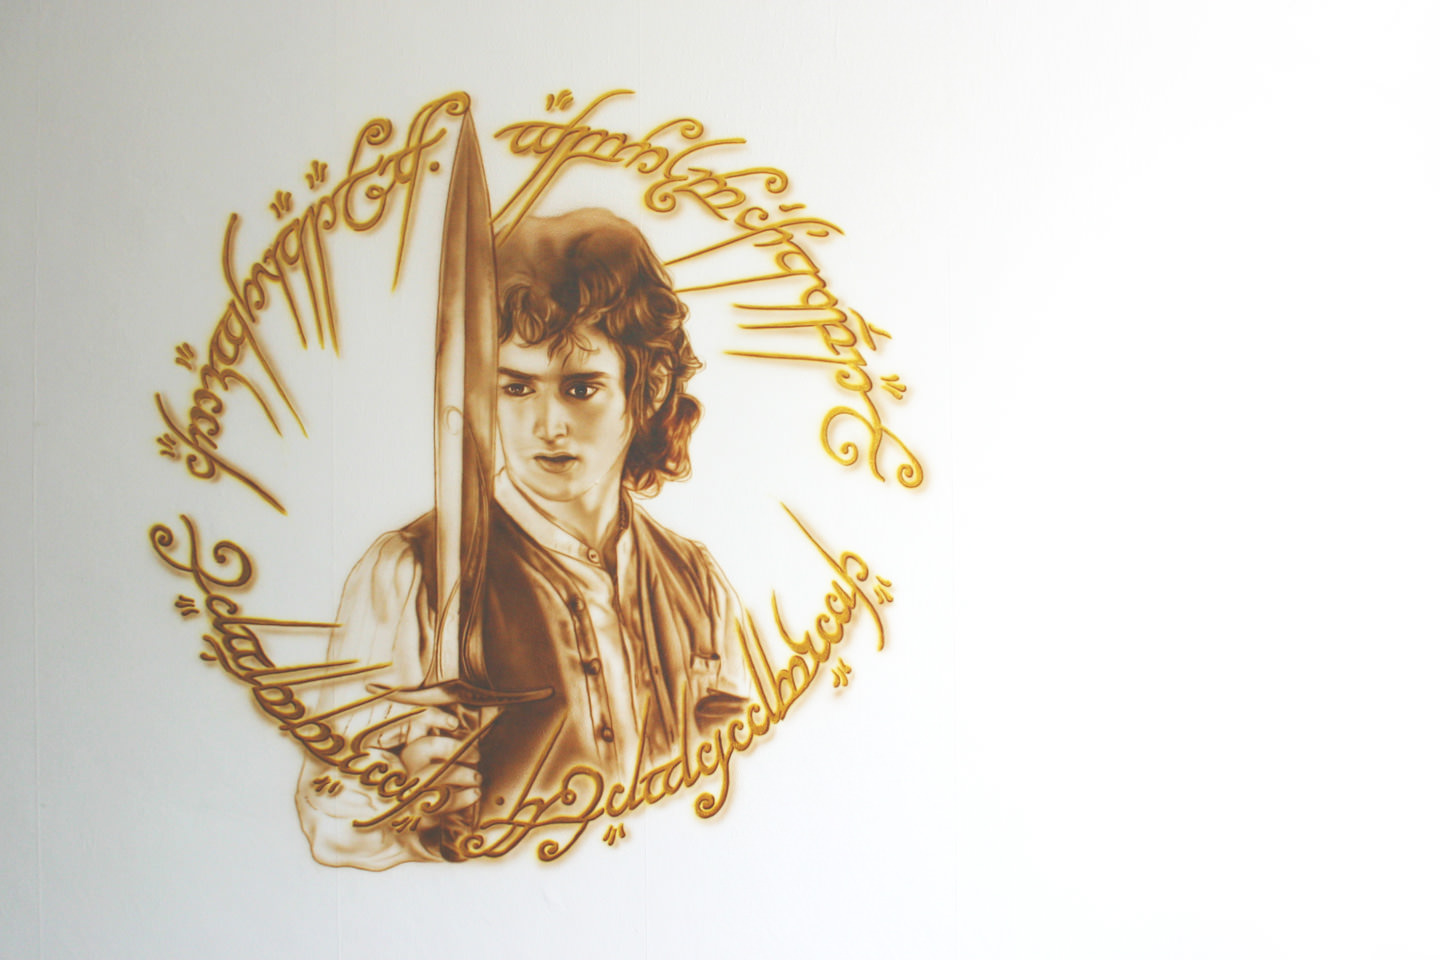 Lord of the Rings muurschildering van Frodo